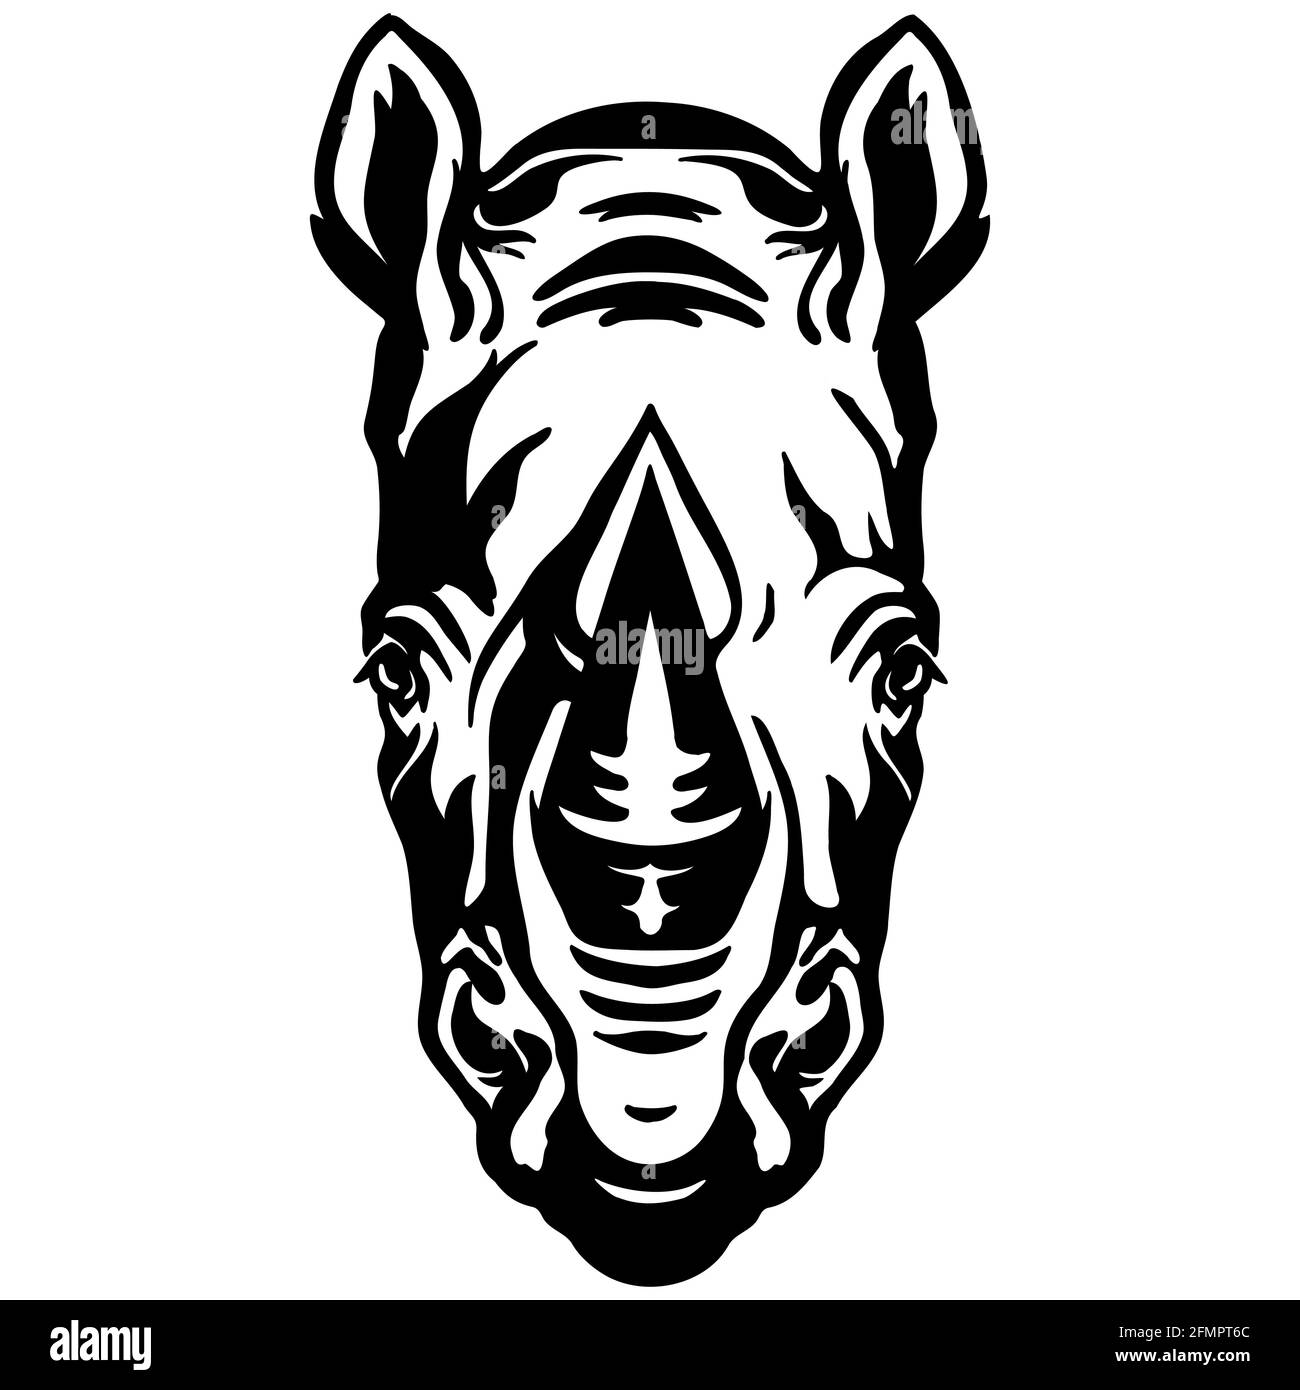 Mascotte. Testa di rinoceronte. Immagine vettoriale vista frontale di colore nero di animali selvatici isolati su sfondo bianco. Per decorazione, stampa, disegno, logo, sp Illustrazione Vettoriale